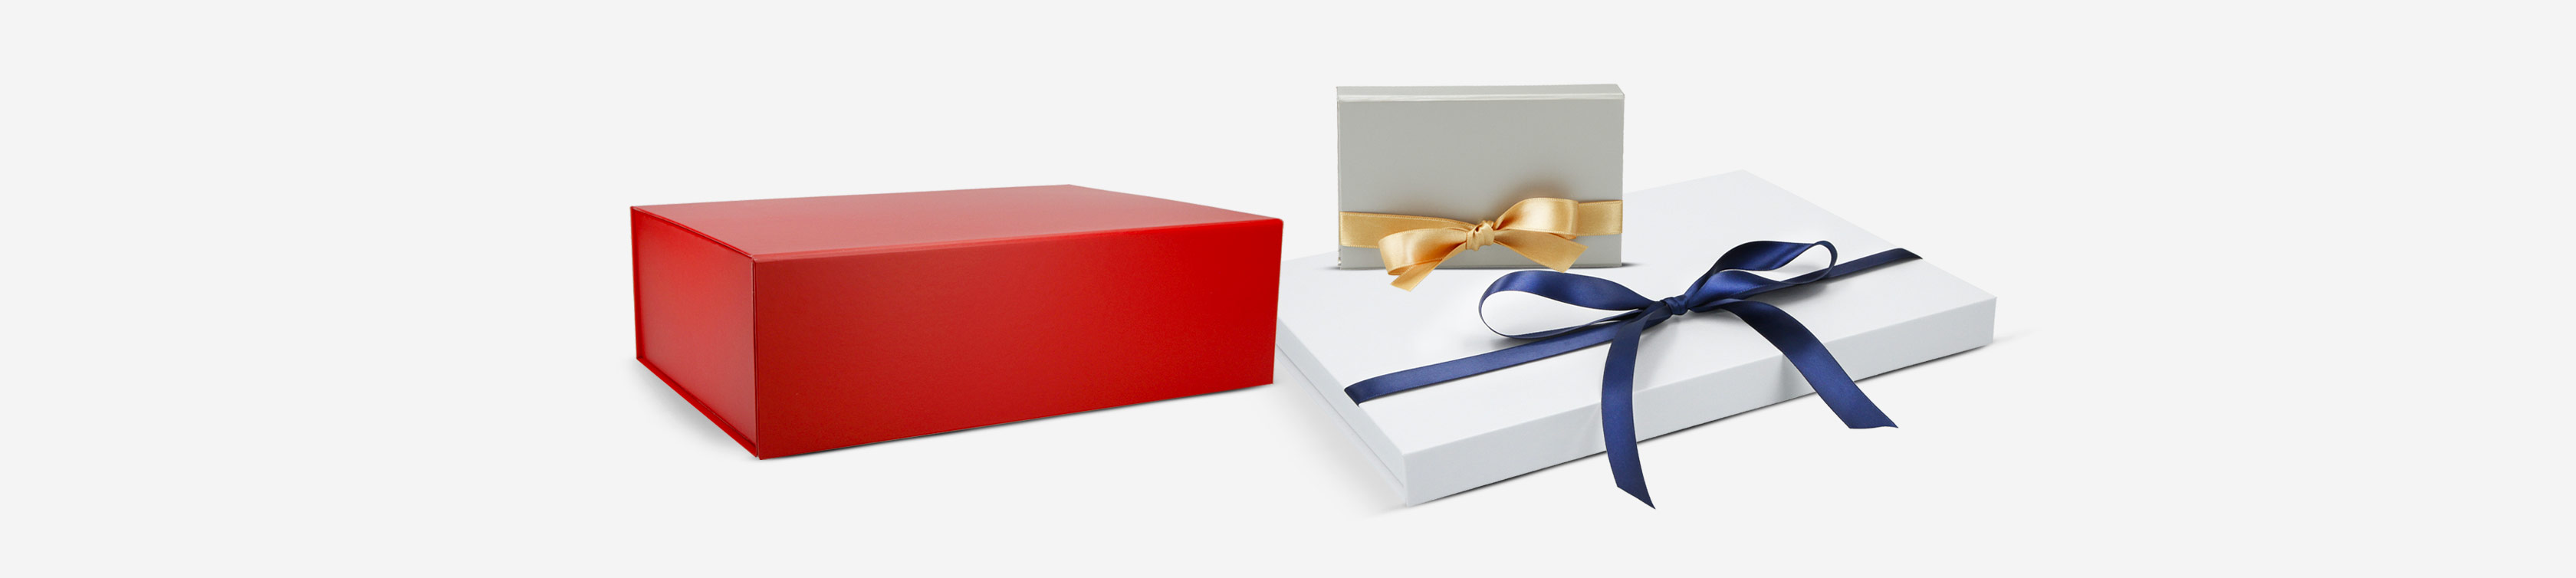 Magnetbox Liverpool für Ihre Produkte und Geschenke